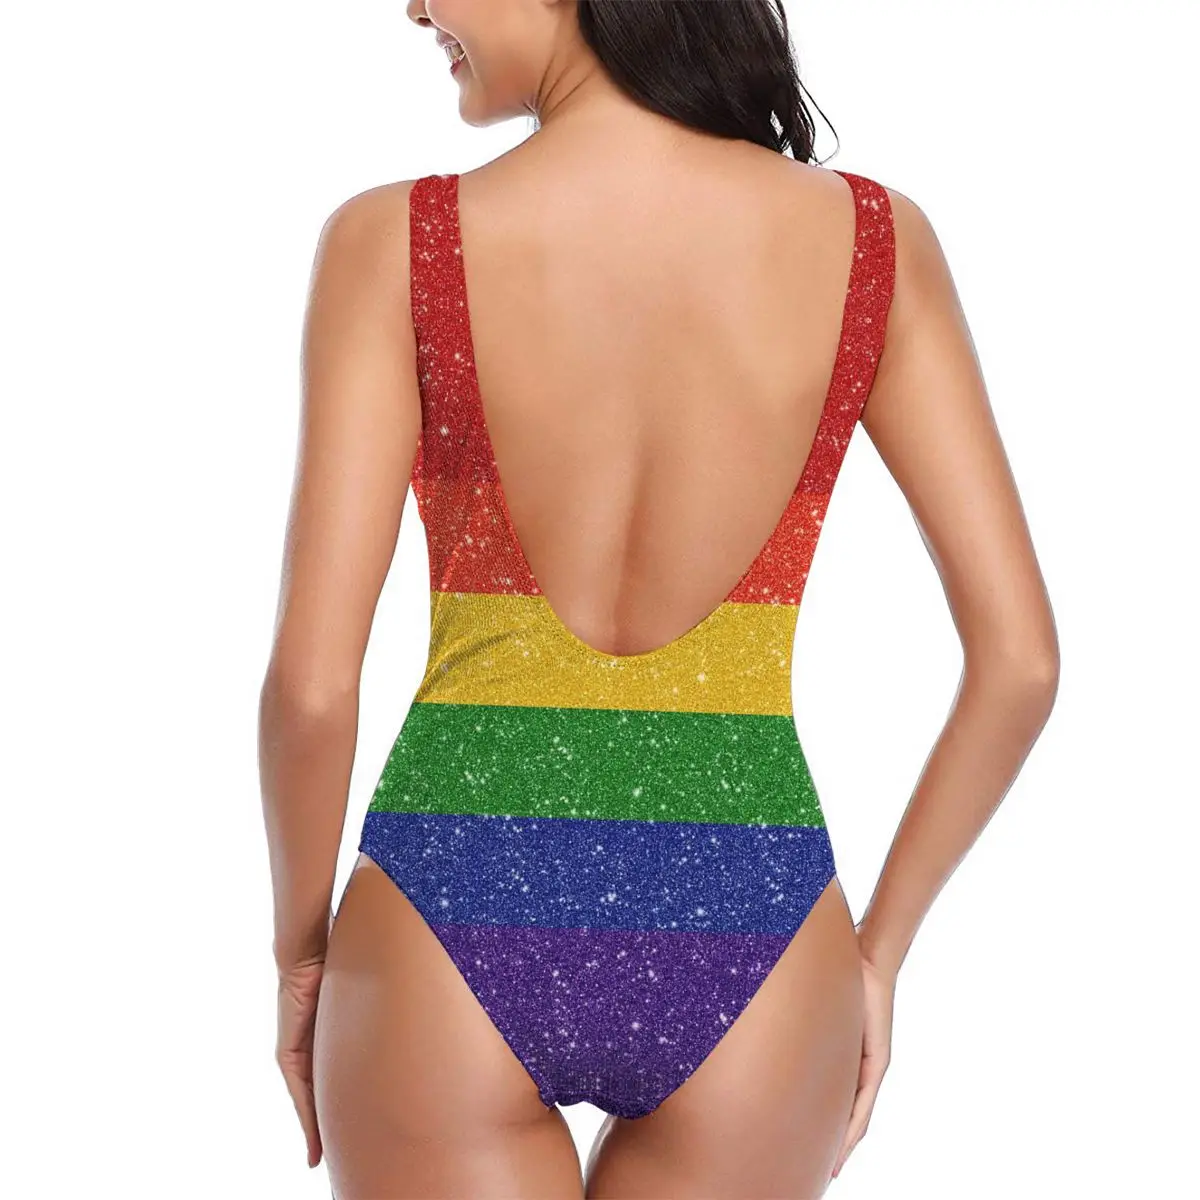 Kobiety 2021 sexy Bikini Sztuczny Blask Tęczy Duma Flaga Kobiety strój Kąpielowy Jednoczęściowy strój Kąpielowy R336 Kobiety strój kąpielowy strój kąpielowy